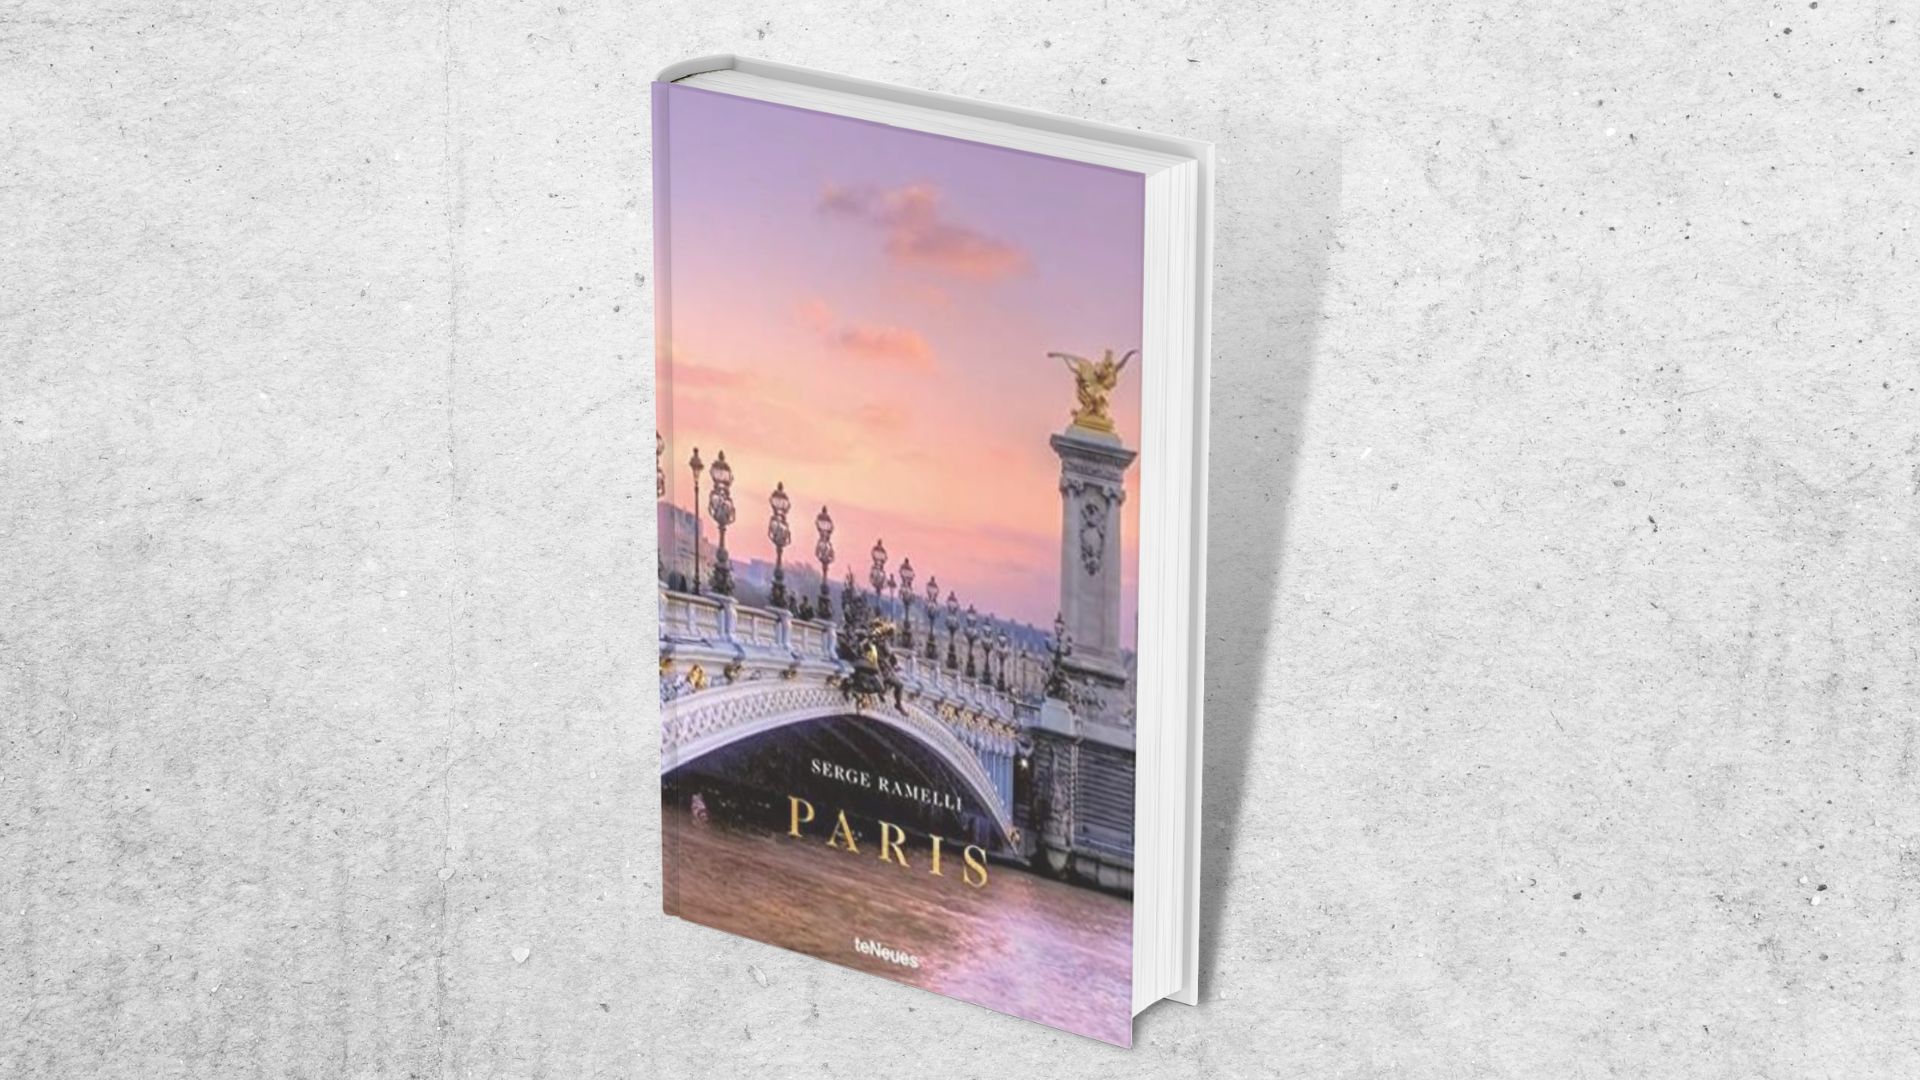 Buch "Paris" von Serge Ramelli